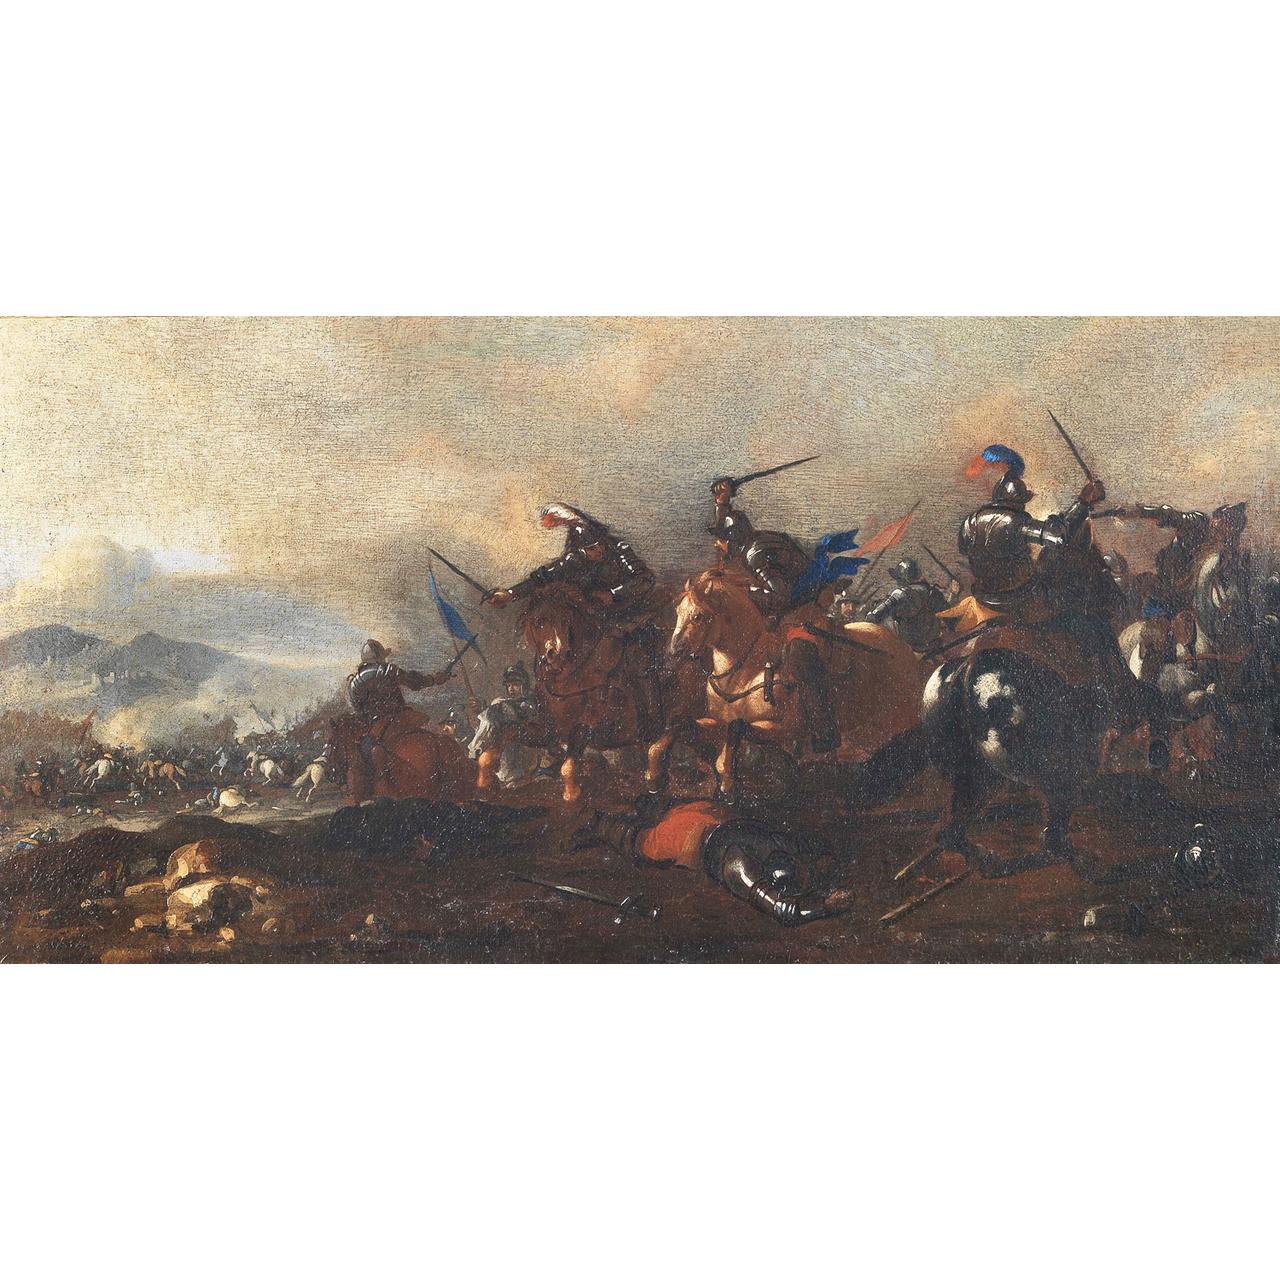 Dipinto: Battaglia di cavalleria